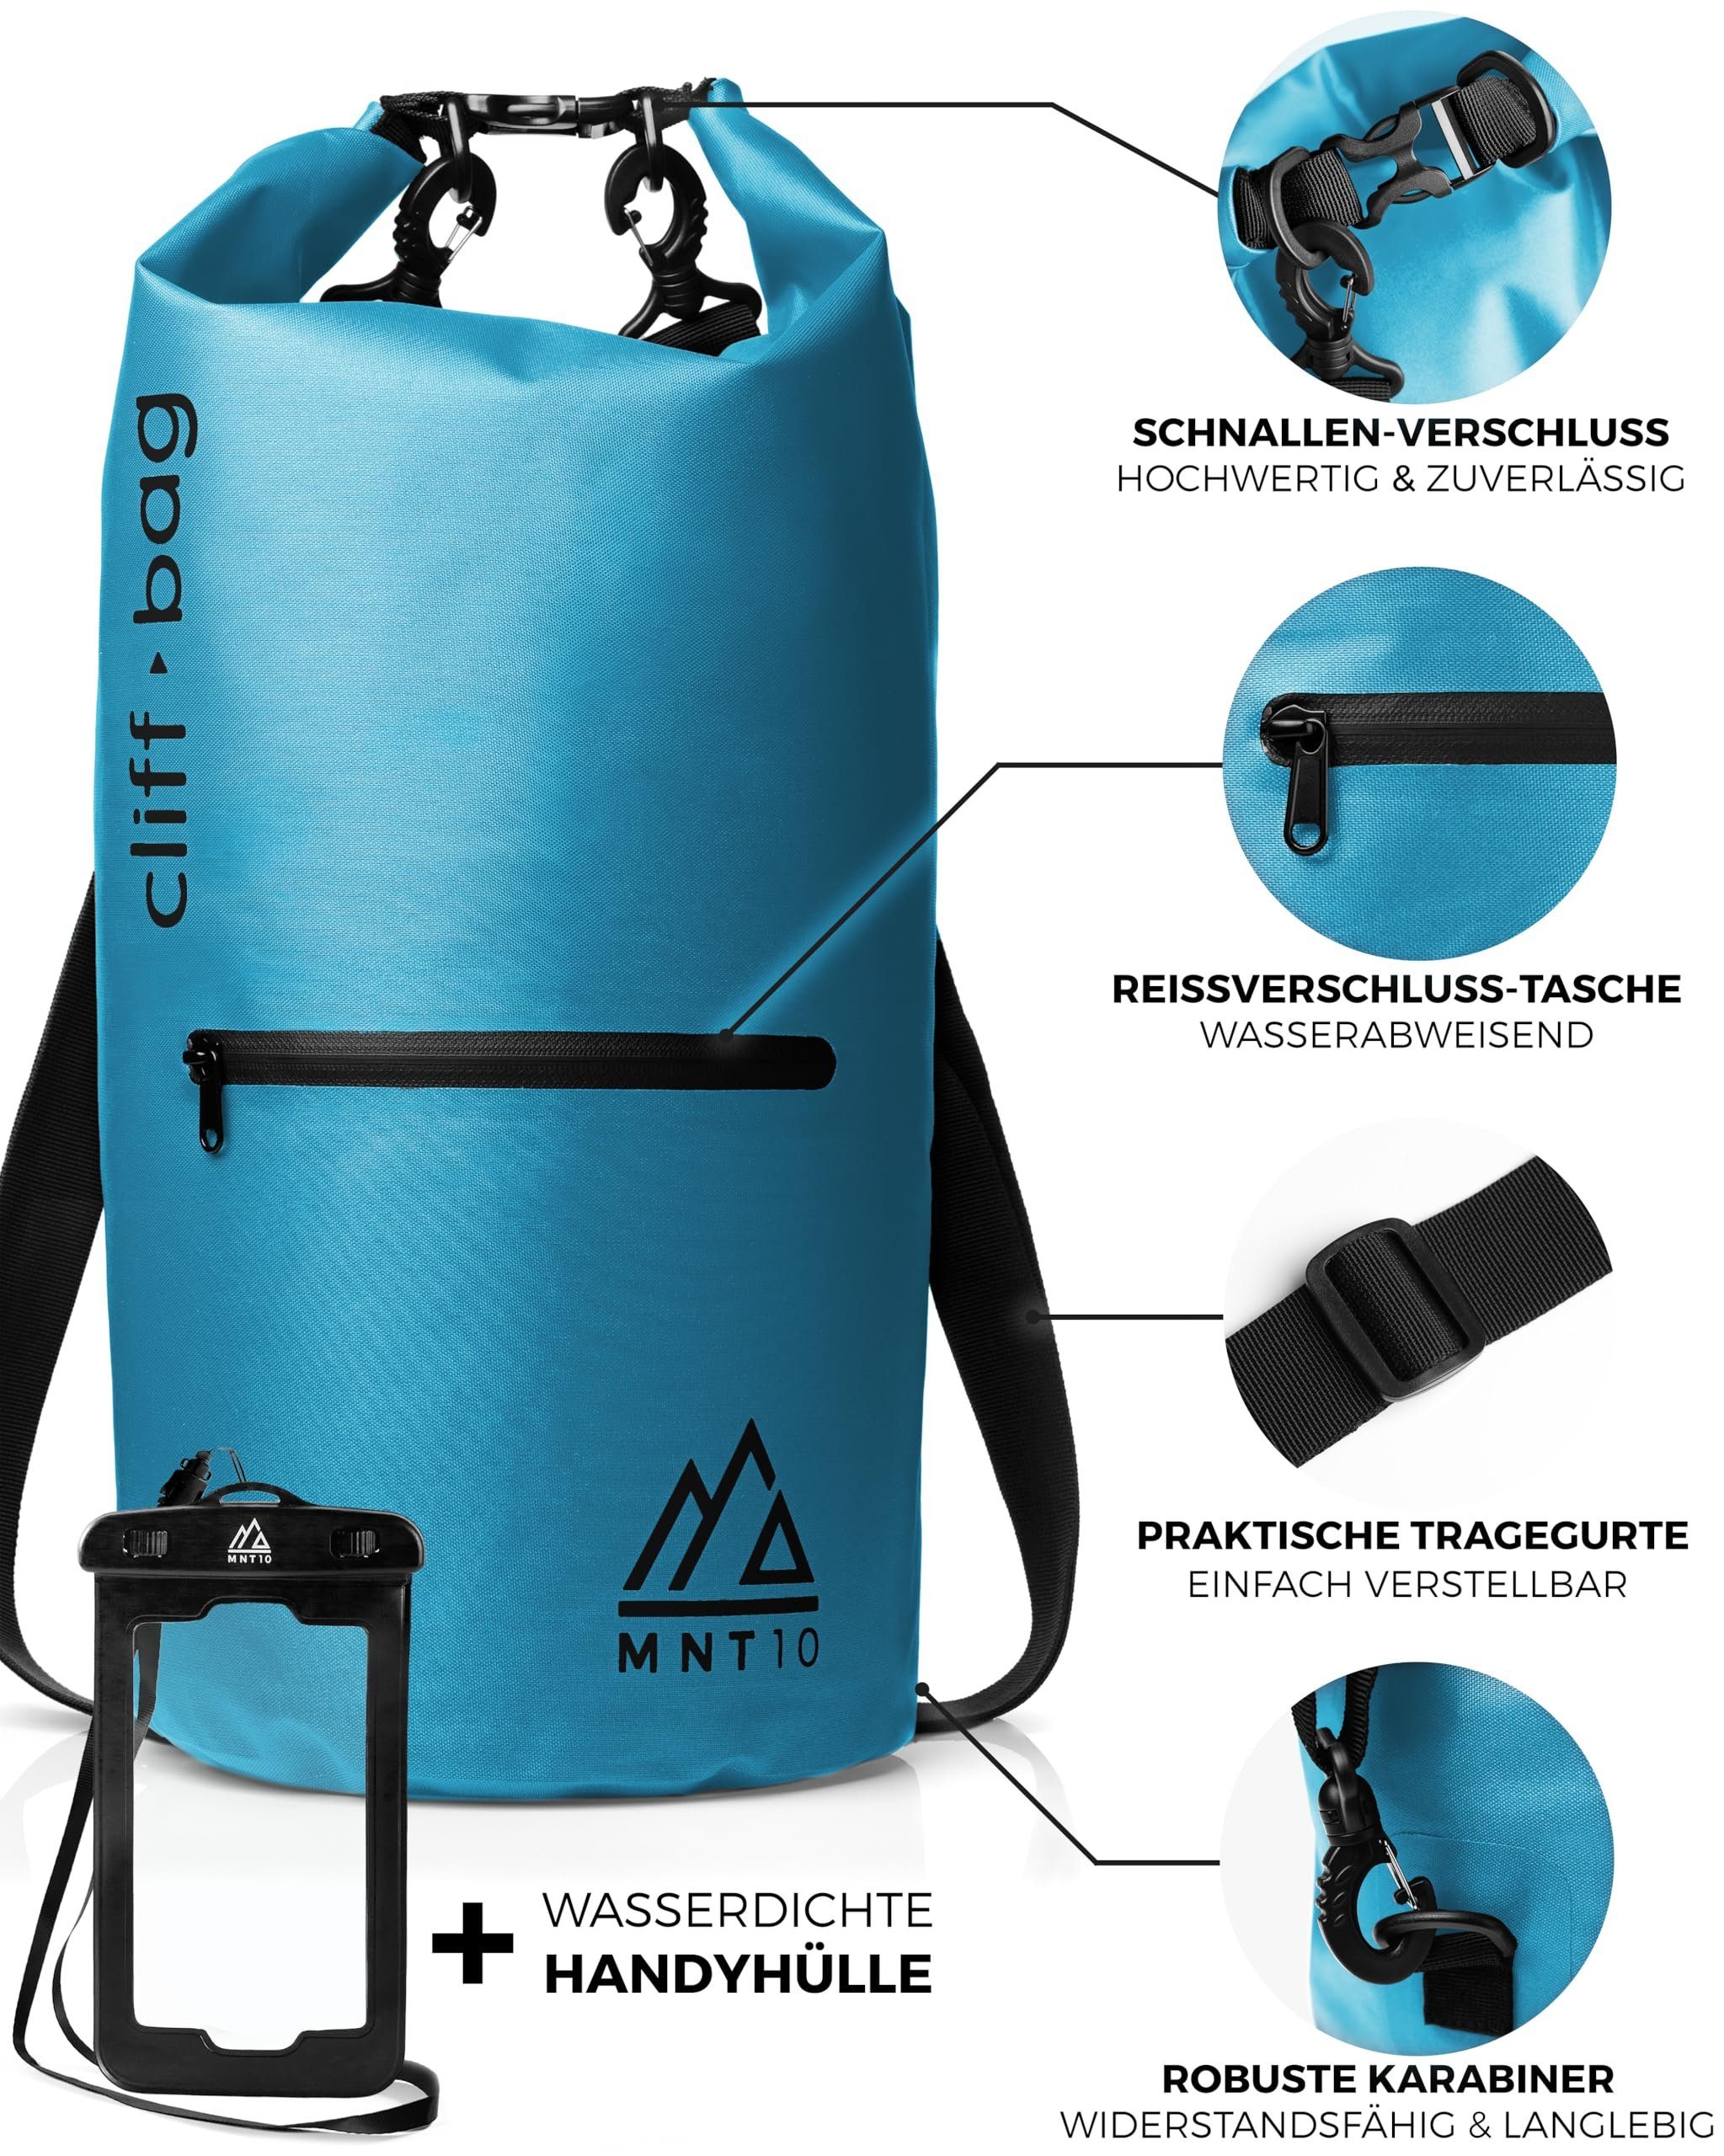 20L, Drybag in 30L, Rucksack Blue “Cliff-Bag” I 40L Light MNT10 Drybag Dry MNT10 Bag